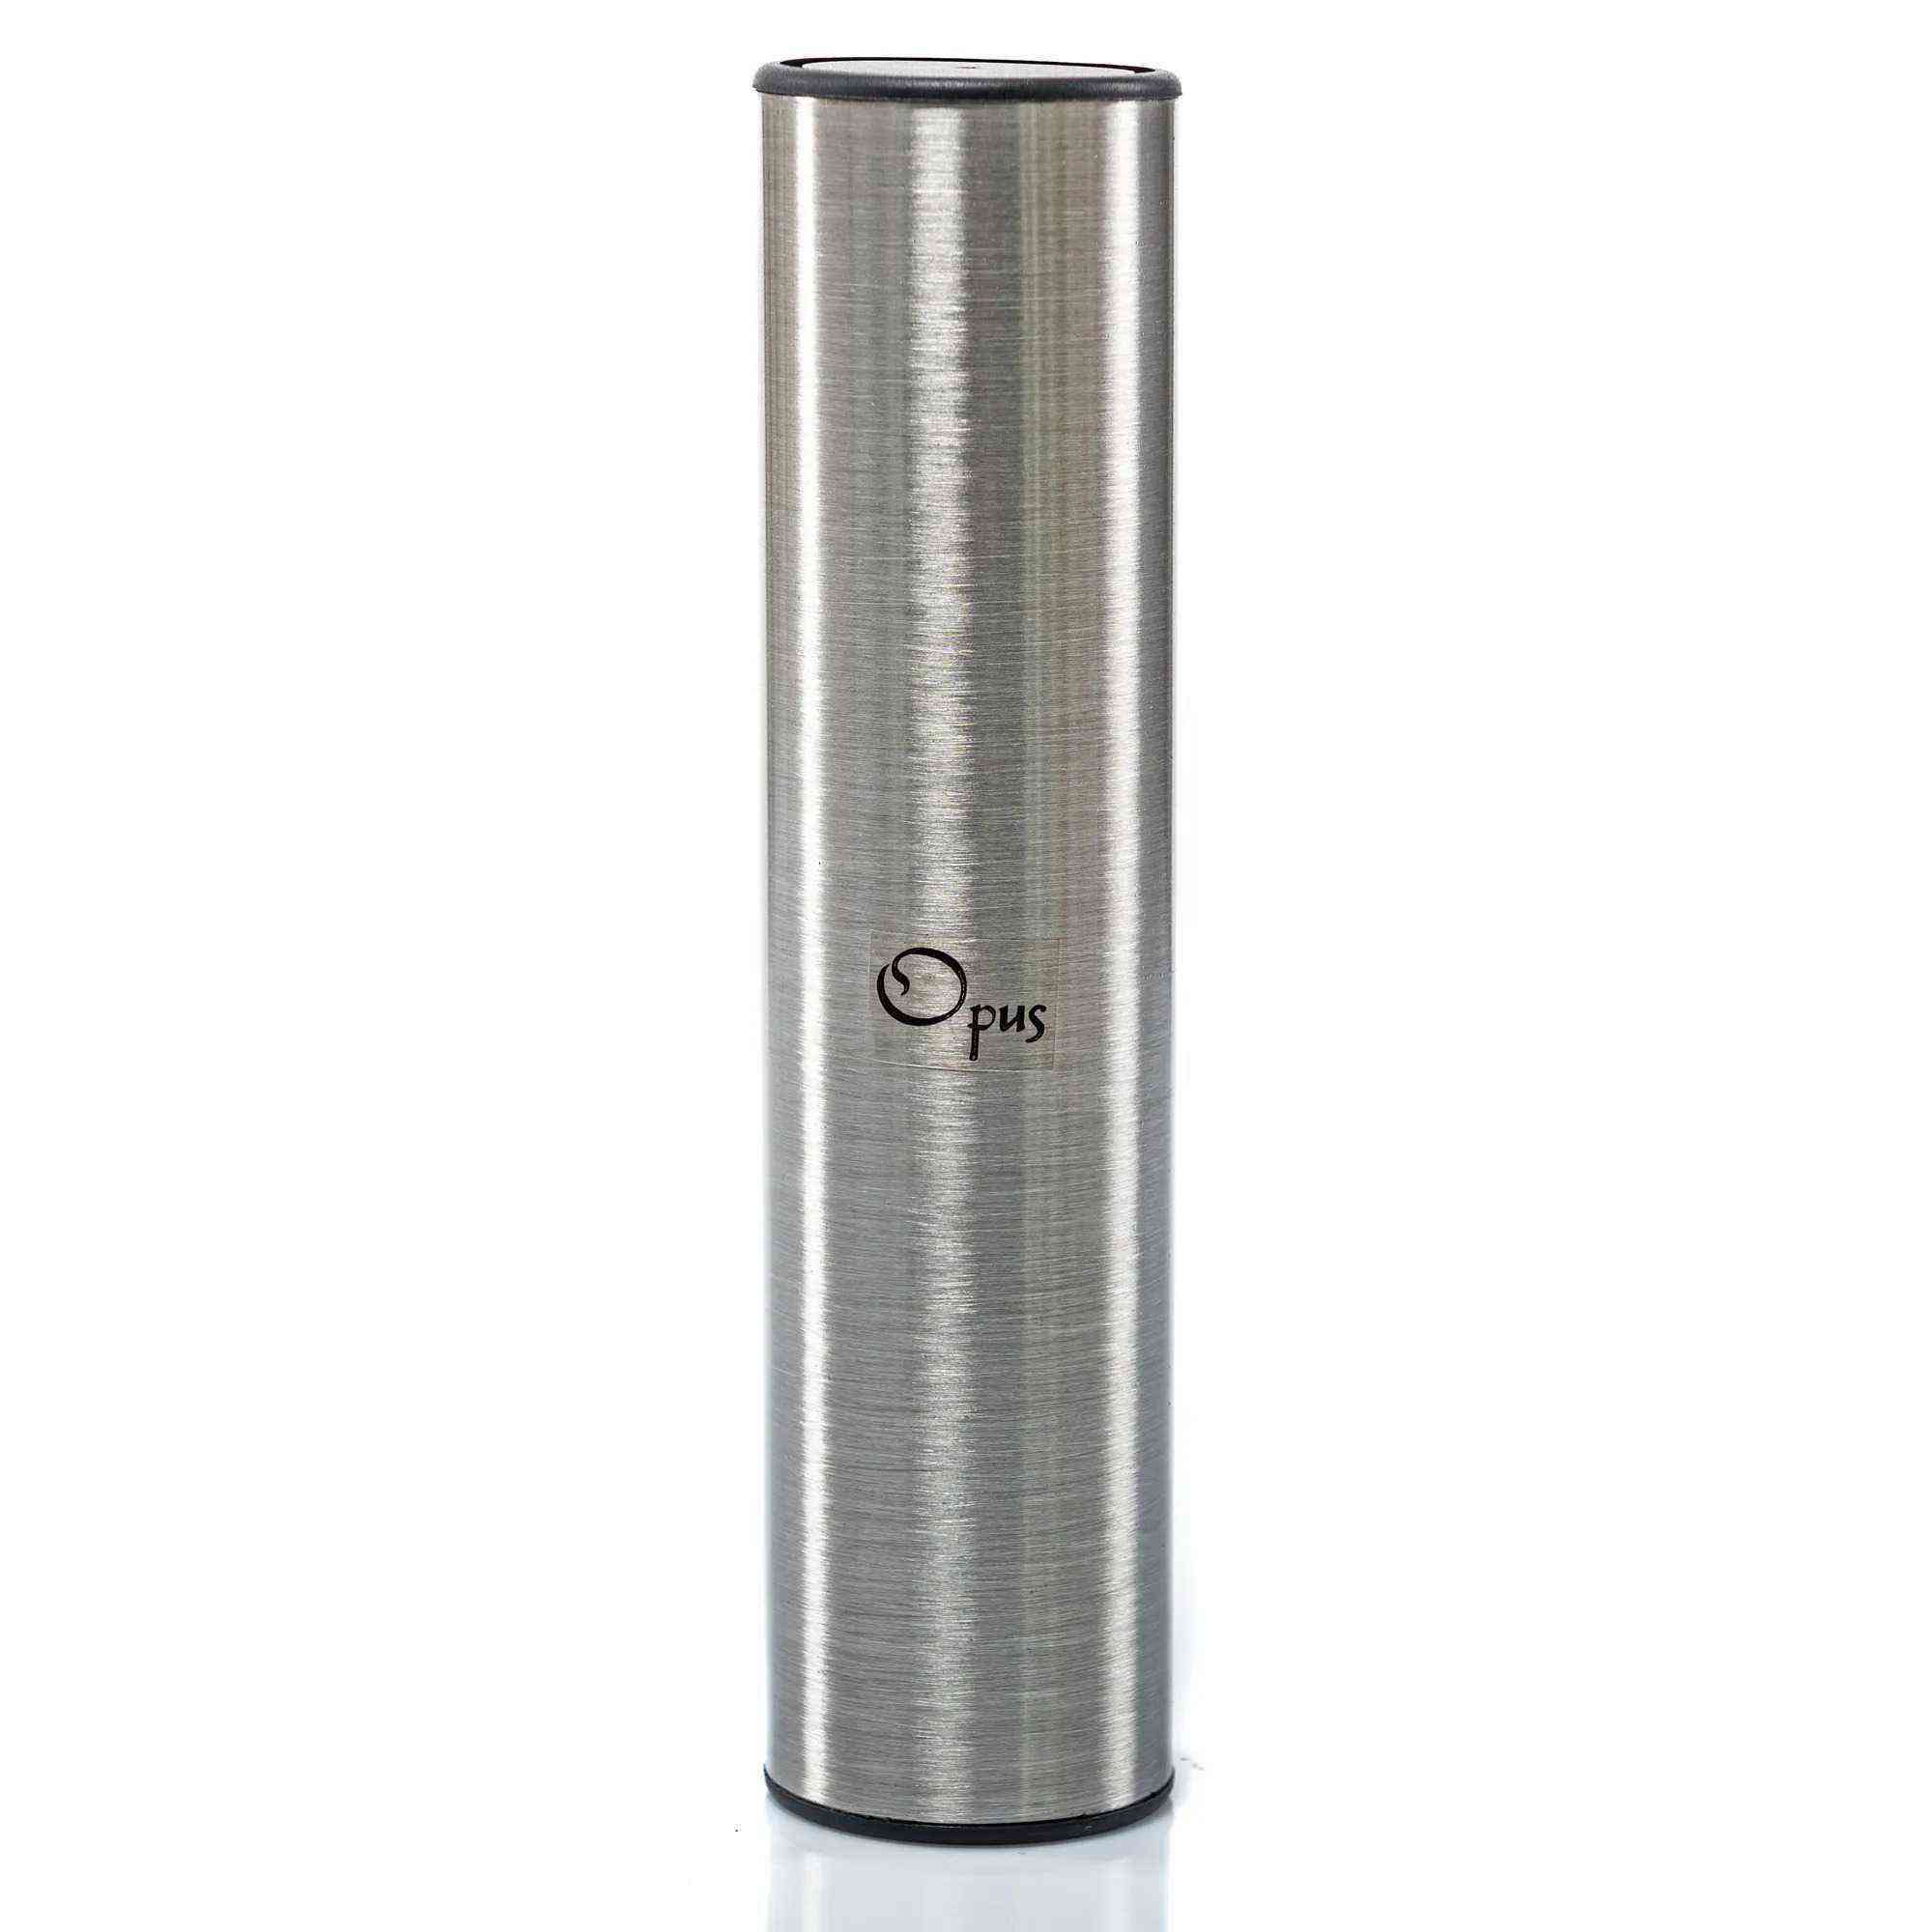 Opus MSH-1 Metal Shaker